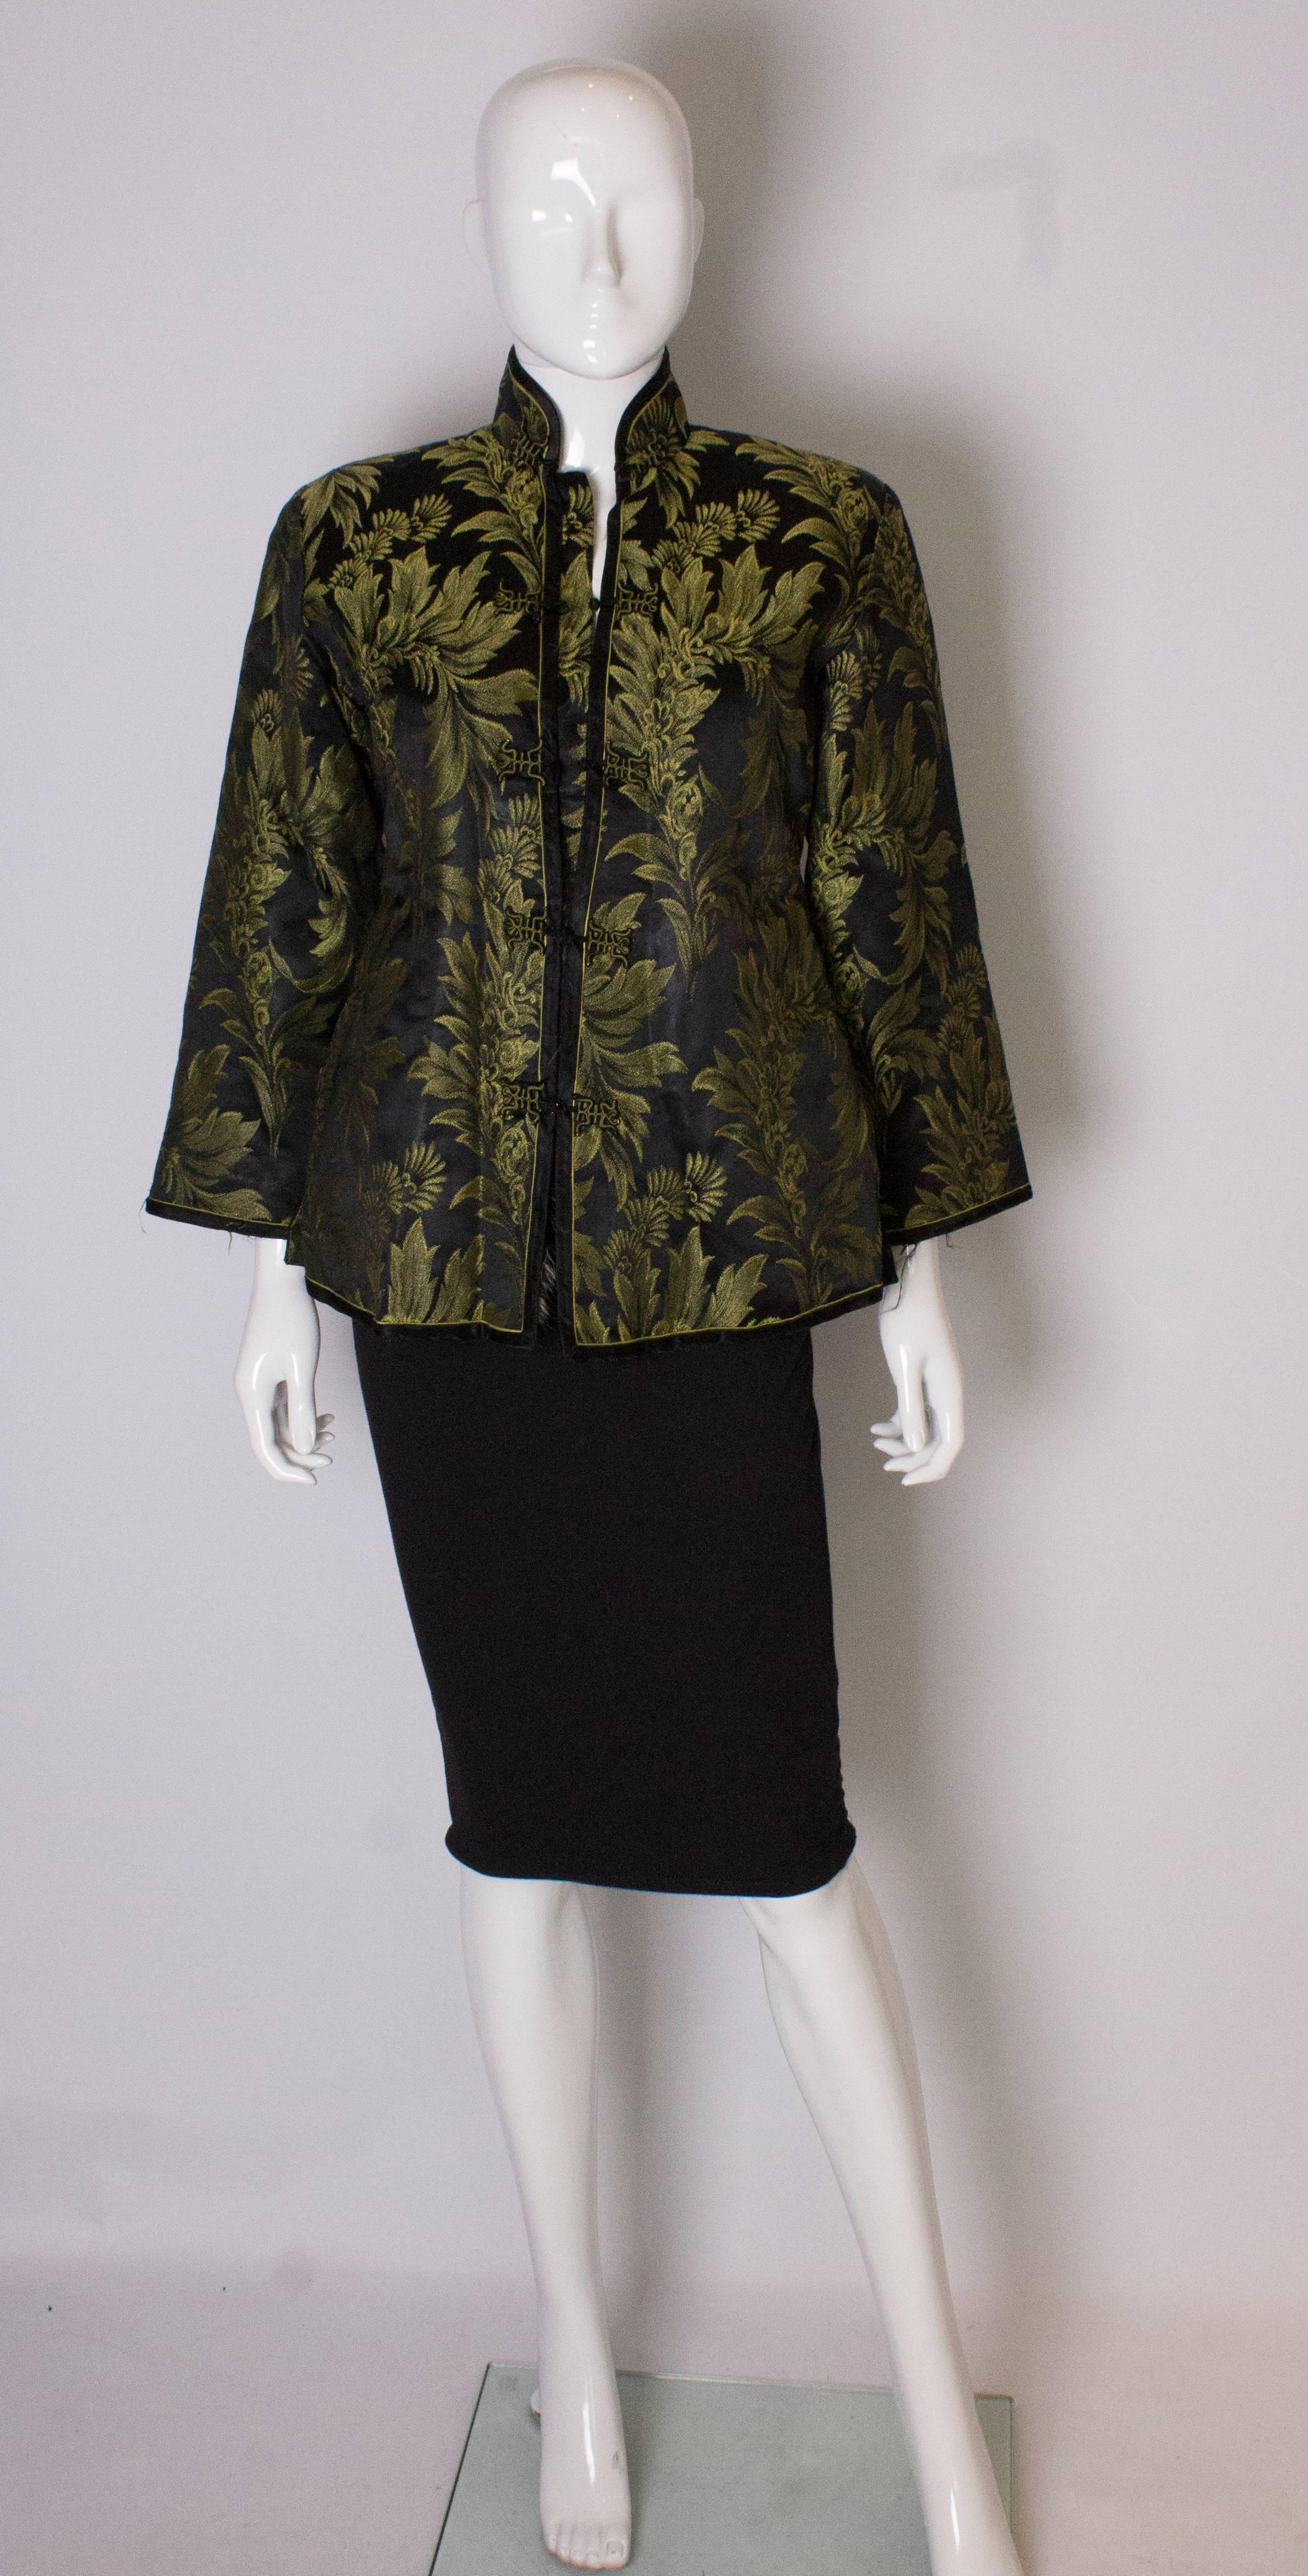 Une veste chinoise vintage chic doublée de fourrure. La veste est en soie noire avec un motif floral jaune/vert, et est doublée de fourrure. Il se ferme à l'aide de boutons-pression et présente des fentes de 6'' sur le côté.